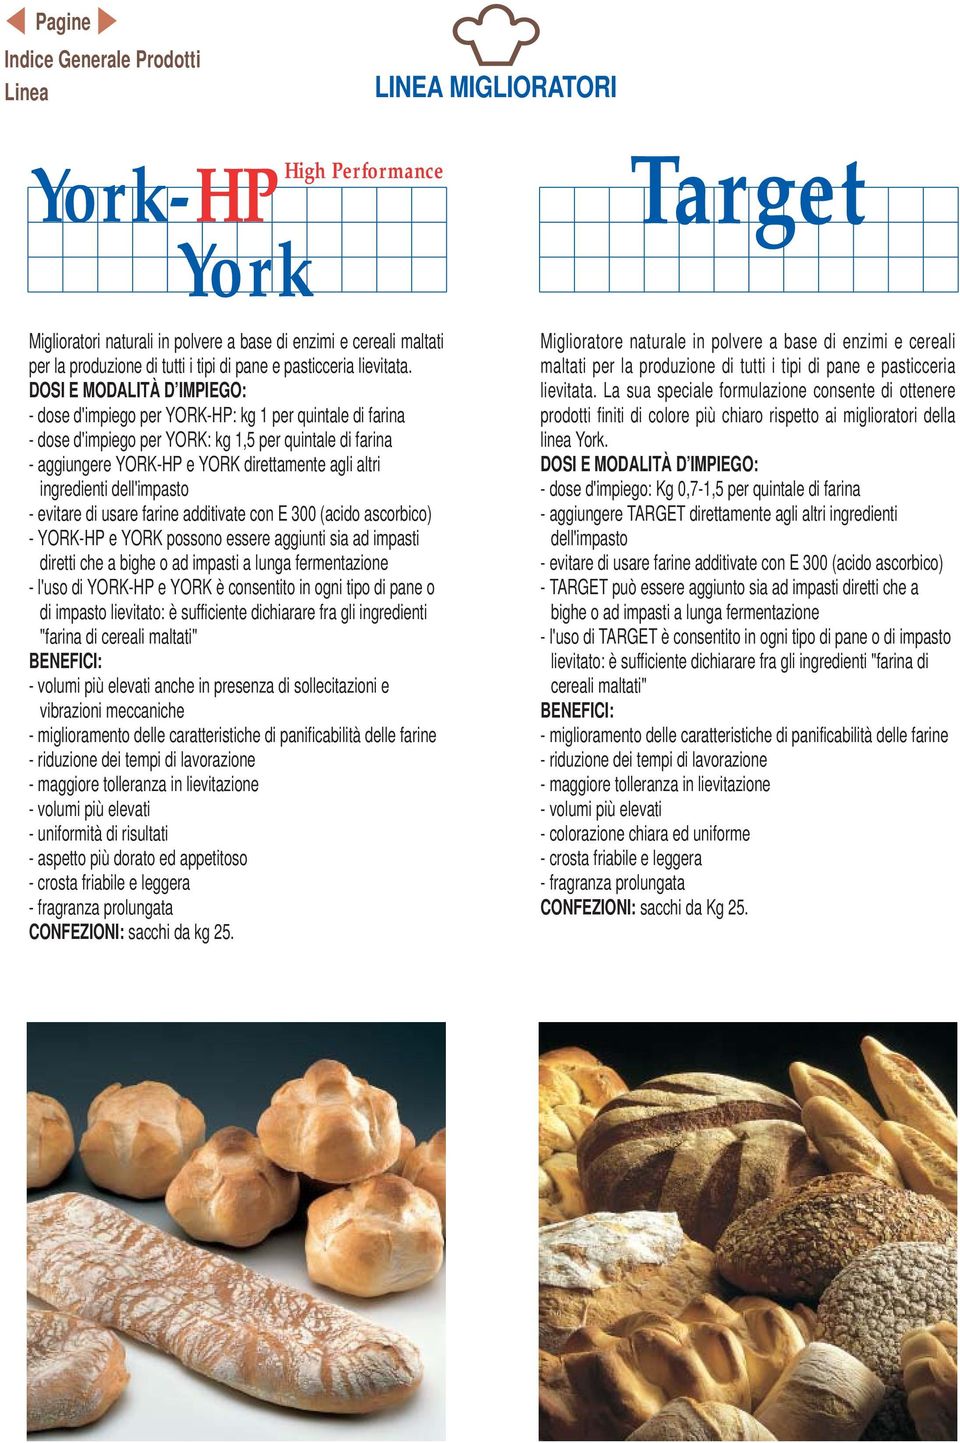 evitare di usare farine additivate con E 300 (acido ascorbico) - YORK-HP e YORK possono essere aggiunti sia ad impasti diretti che a bighe o ad impasti a lunga fermentazione - l'uso di YORK-HP e YORK